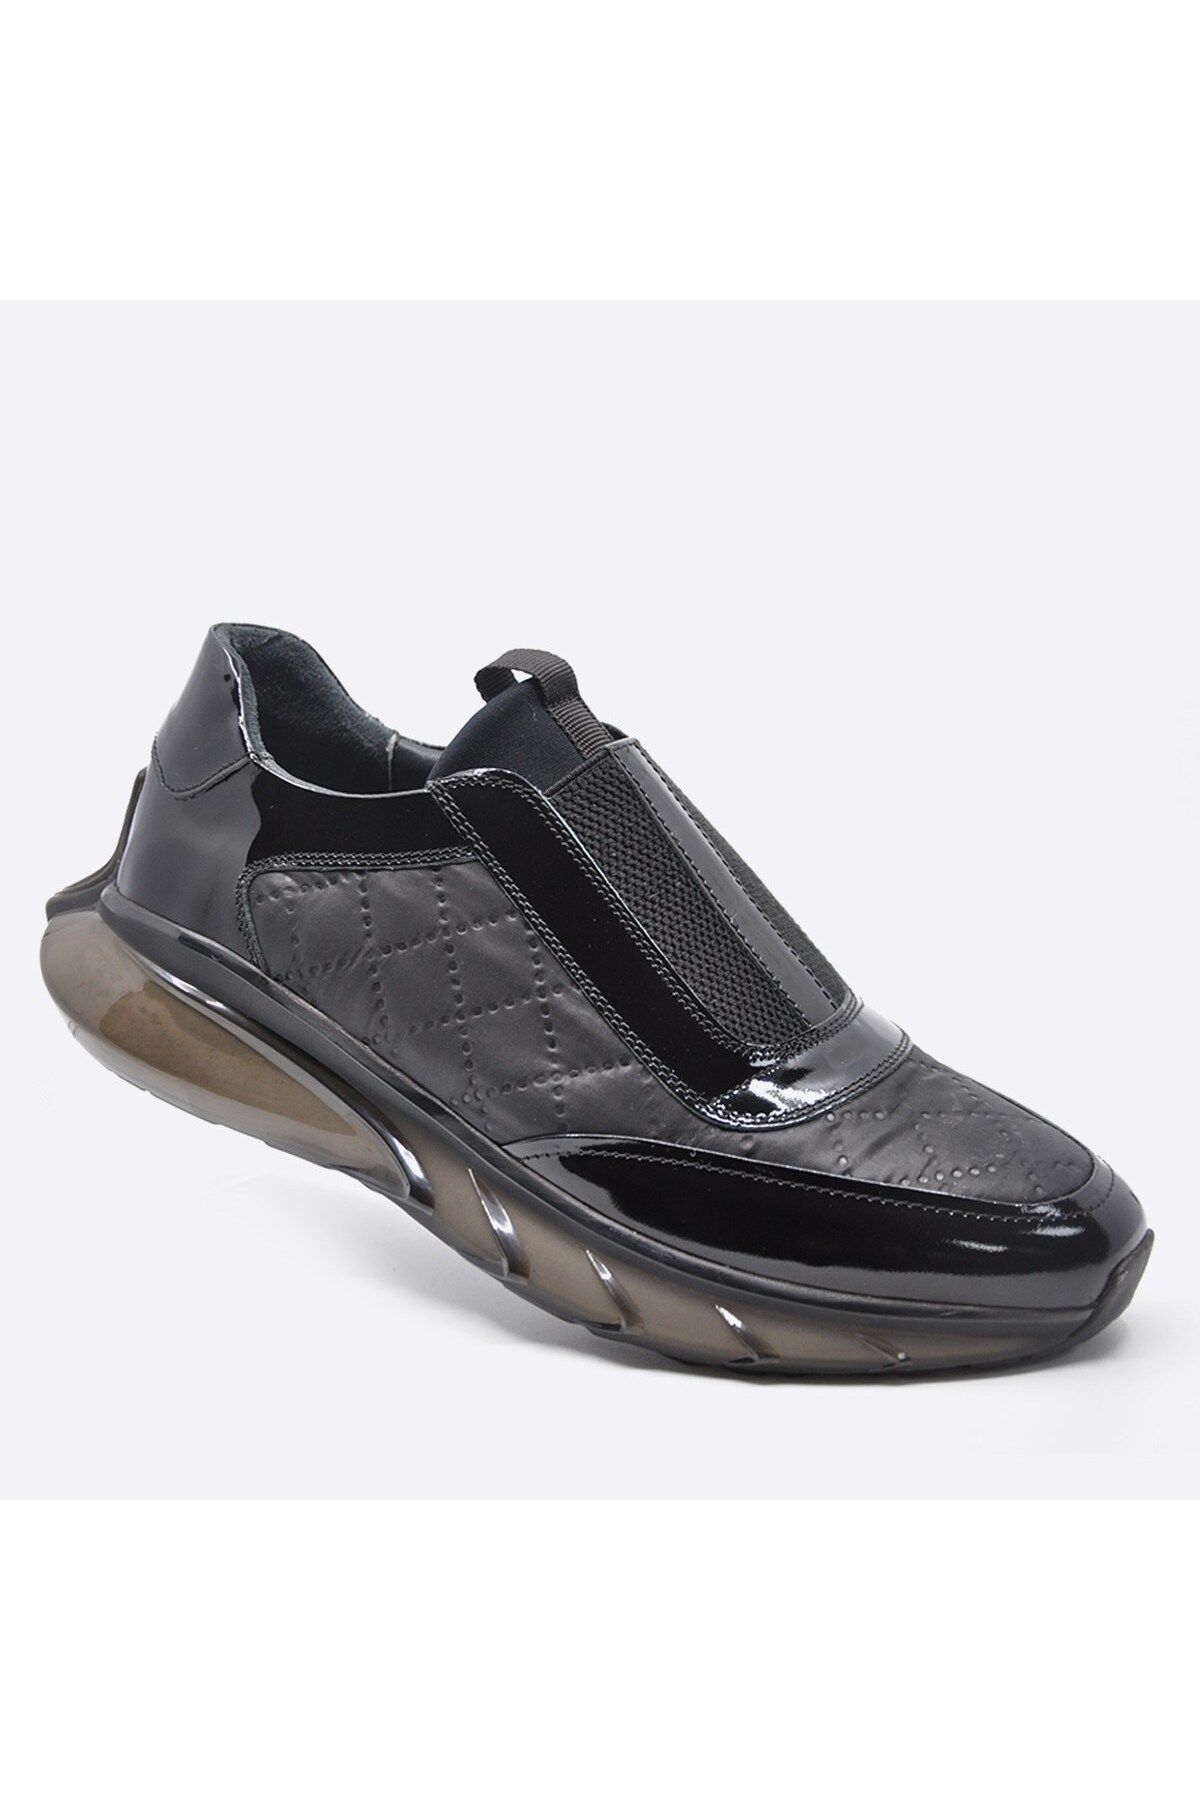 Fosco Hakiki Deri Sneaker Erkek Ayakkabı Siyah 9872 100